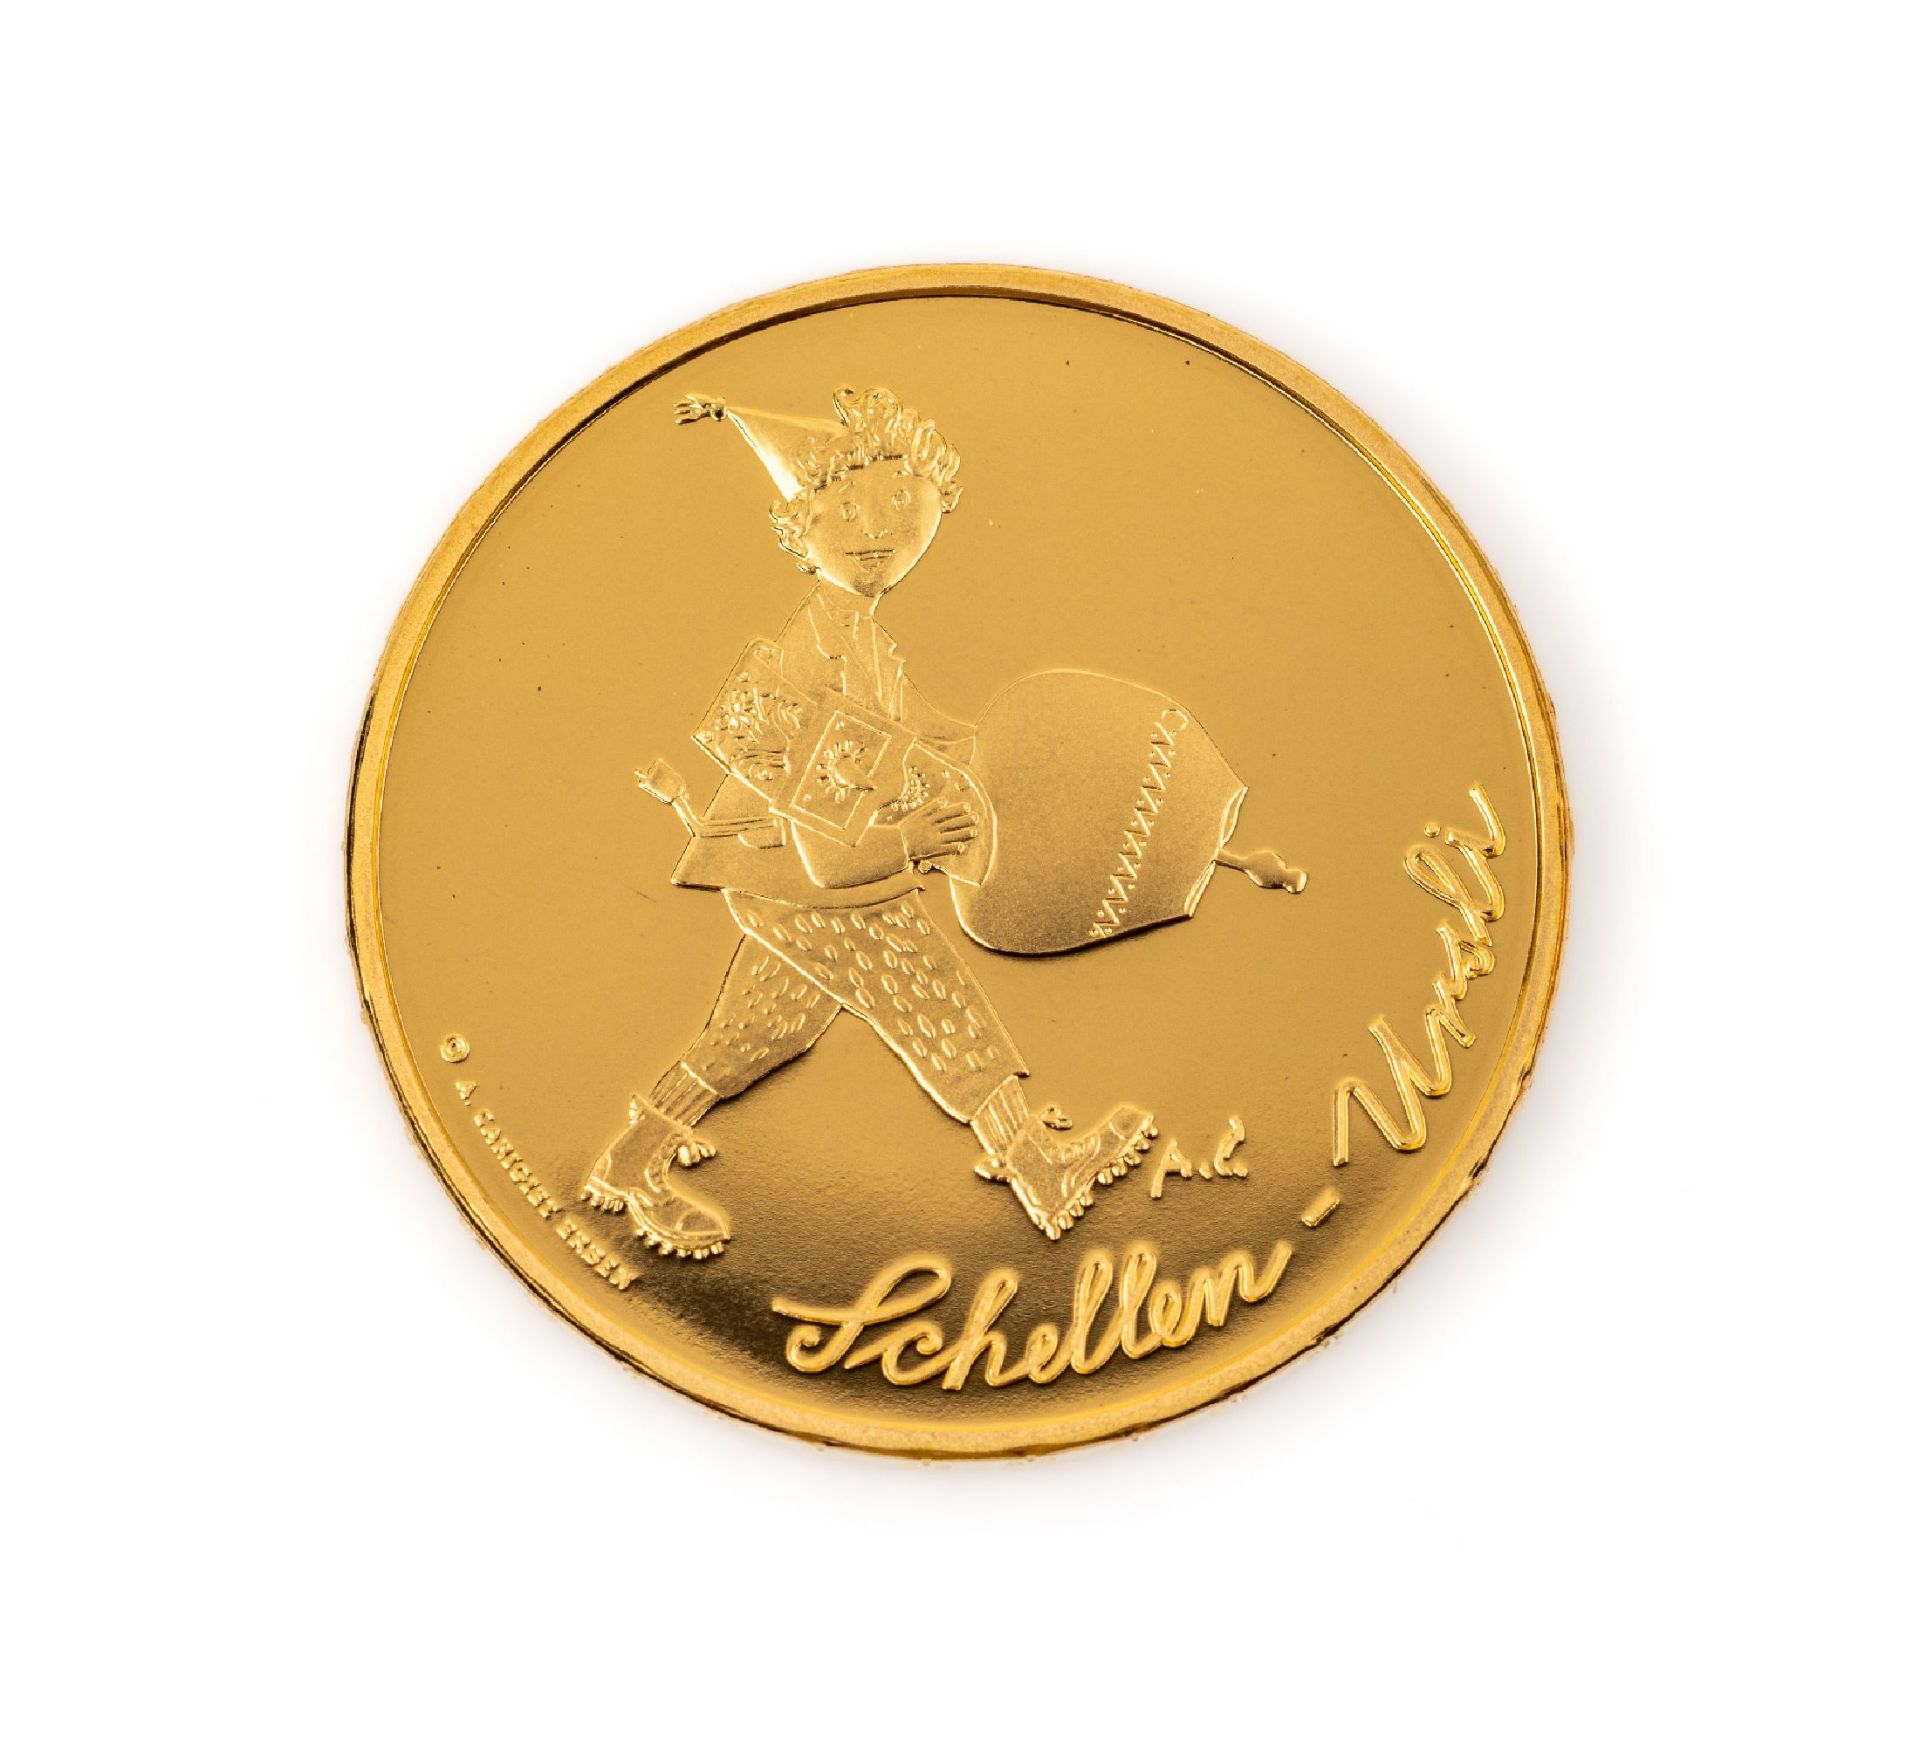 Goldmünze 50 Franken, Schweiz 2011, Schellen-Ursli, in